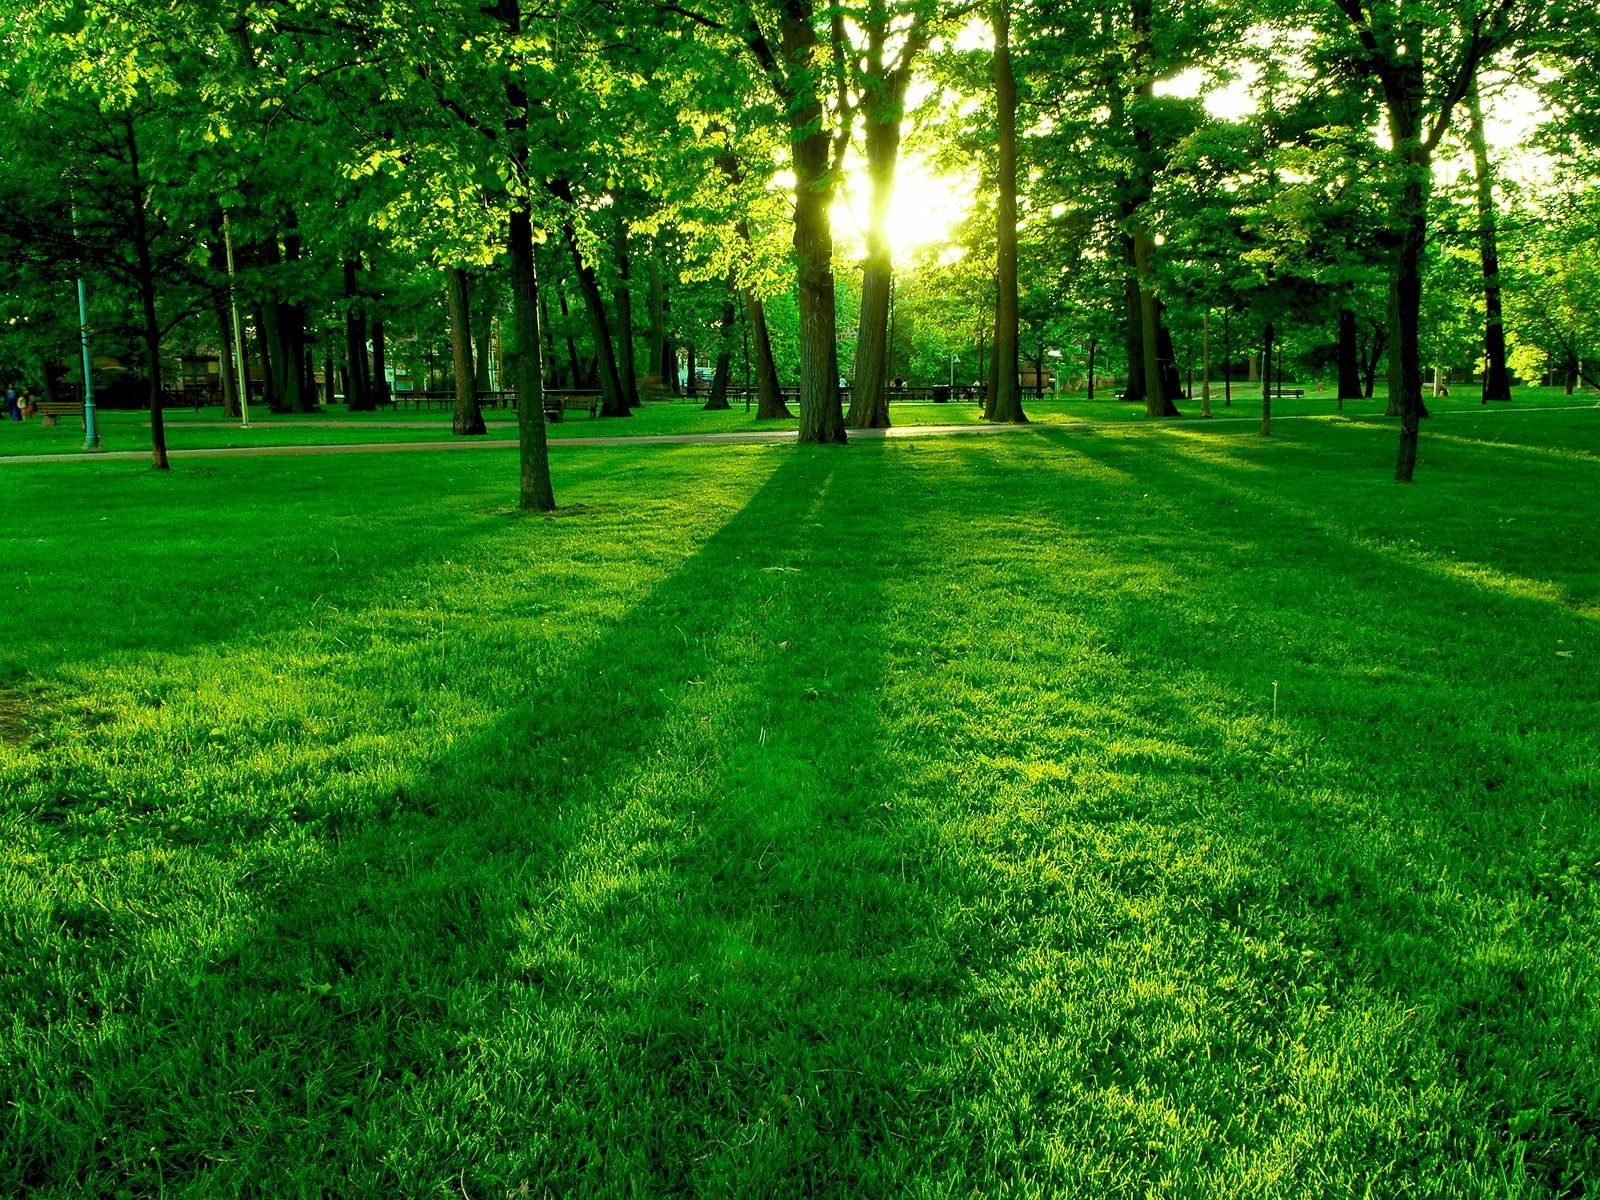 Màu xanh lá cây của hình nền thiên nhiên sẽ mang lại cho bạn cảm giác mát mẻ, tươi trẻ và cực kỳ thư giãn. Hoàn toàn có thể sử dụng hình nền thiên nhiên màu xanh lá cây để trang trí màn hình máy tính, làm bối cảnh cho trang web hay chia sẻ lên mạng xã hội.